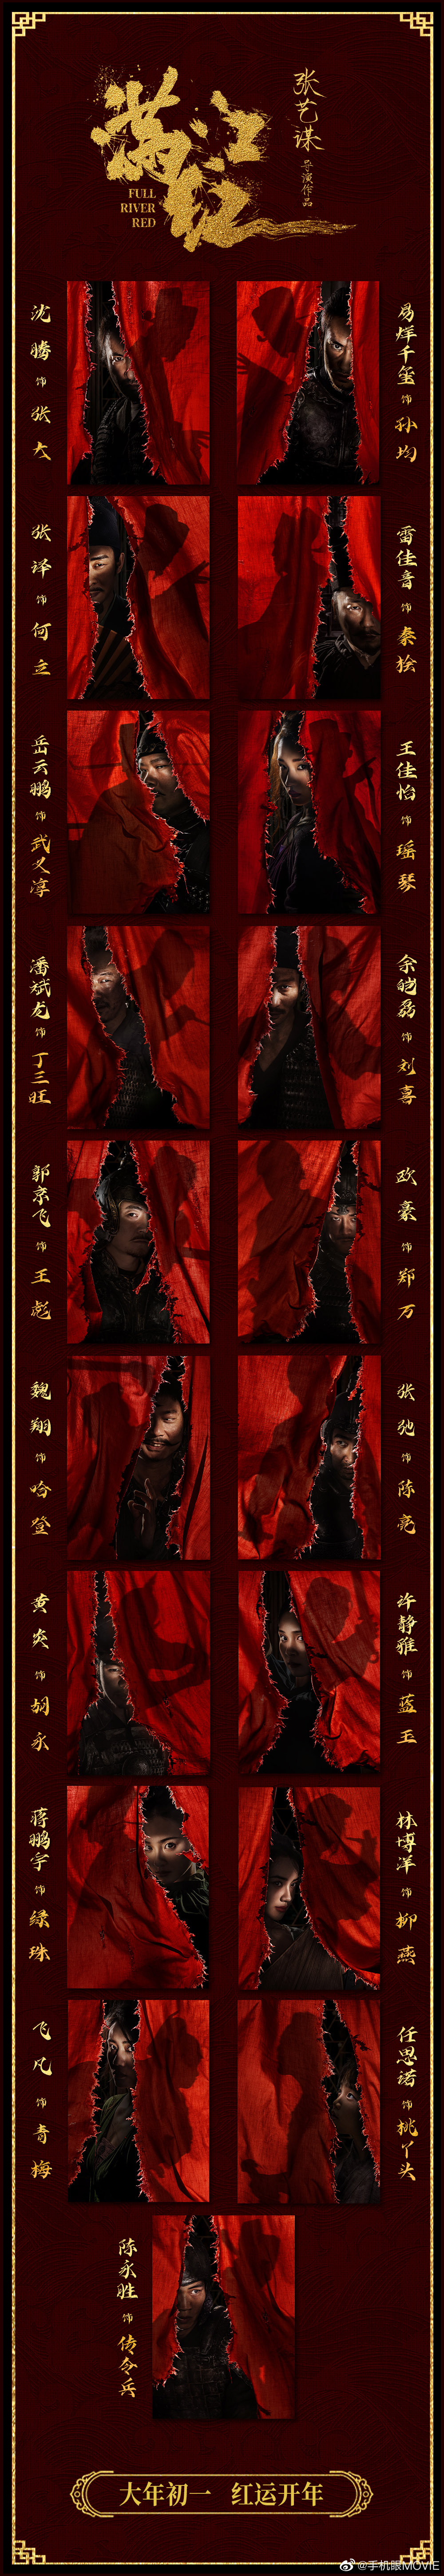 《满江红》角色扮演者演员表一览 满江红人物关系身份性格解析